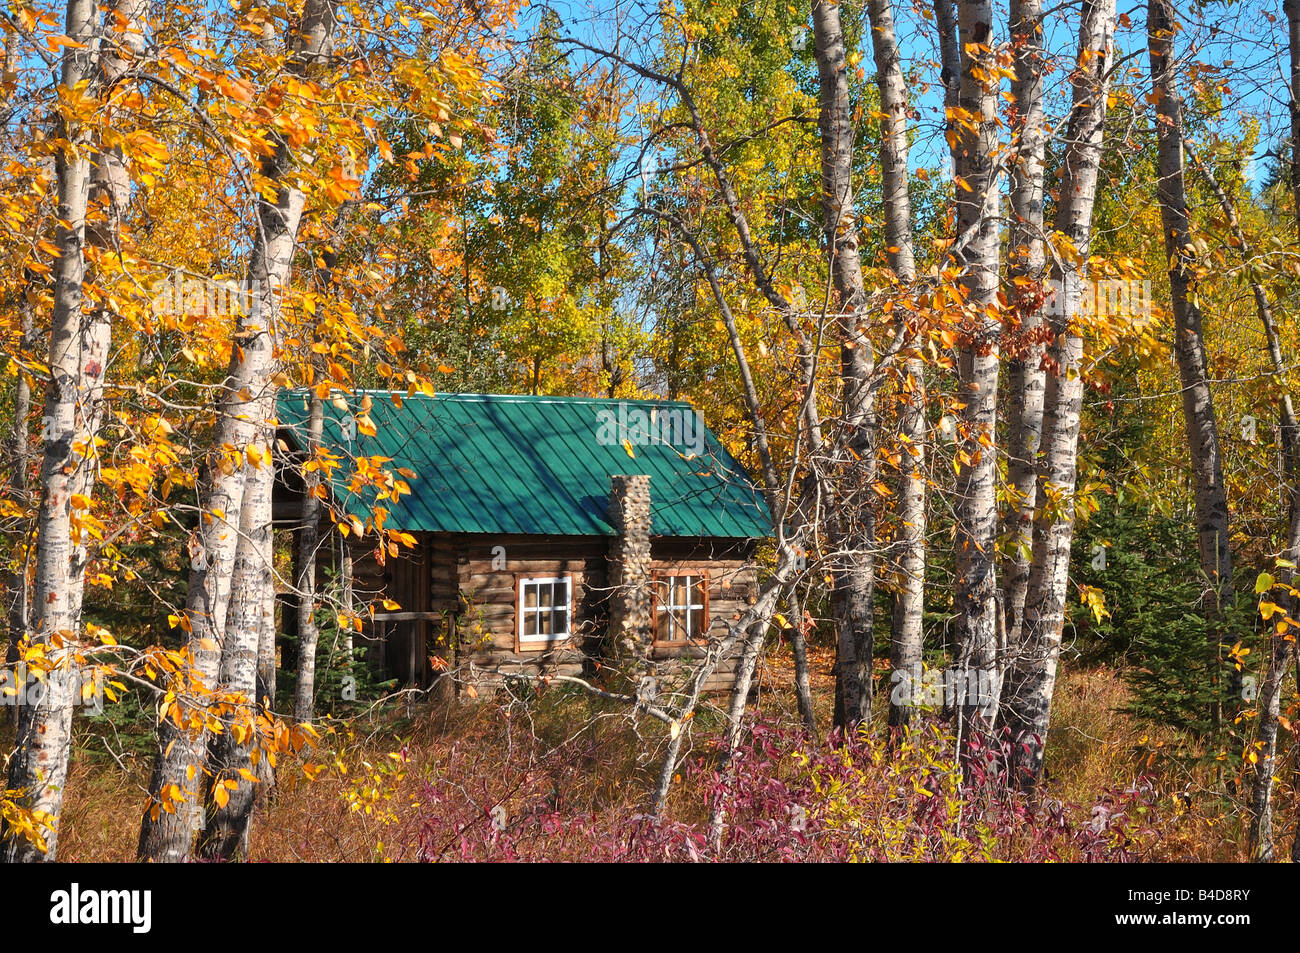 Hütte im Wald Stockfotografie - Alamy